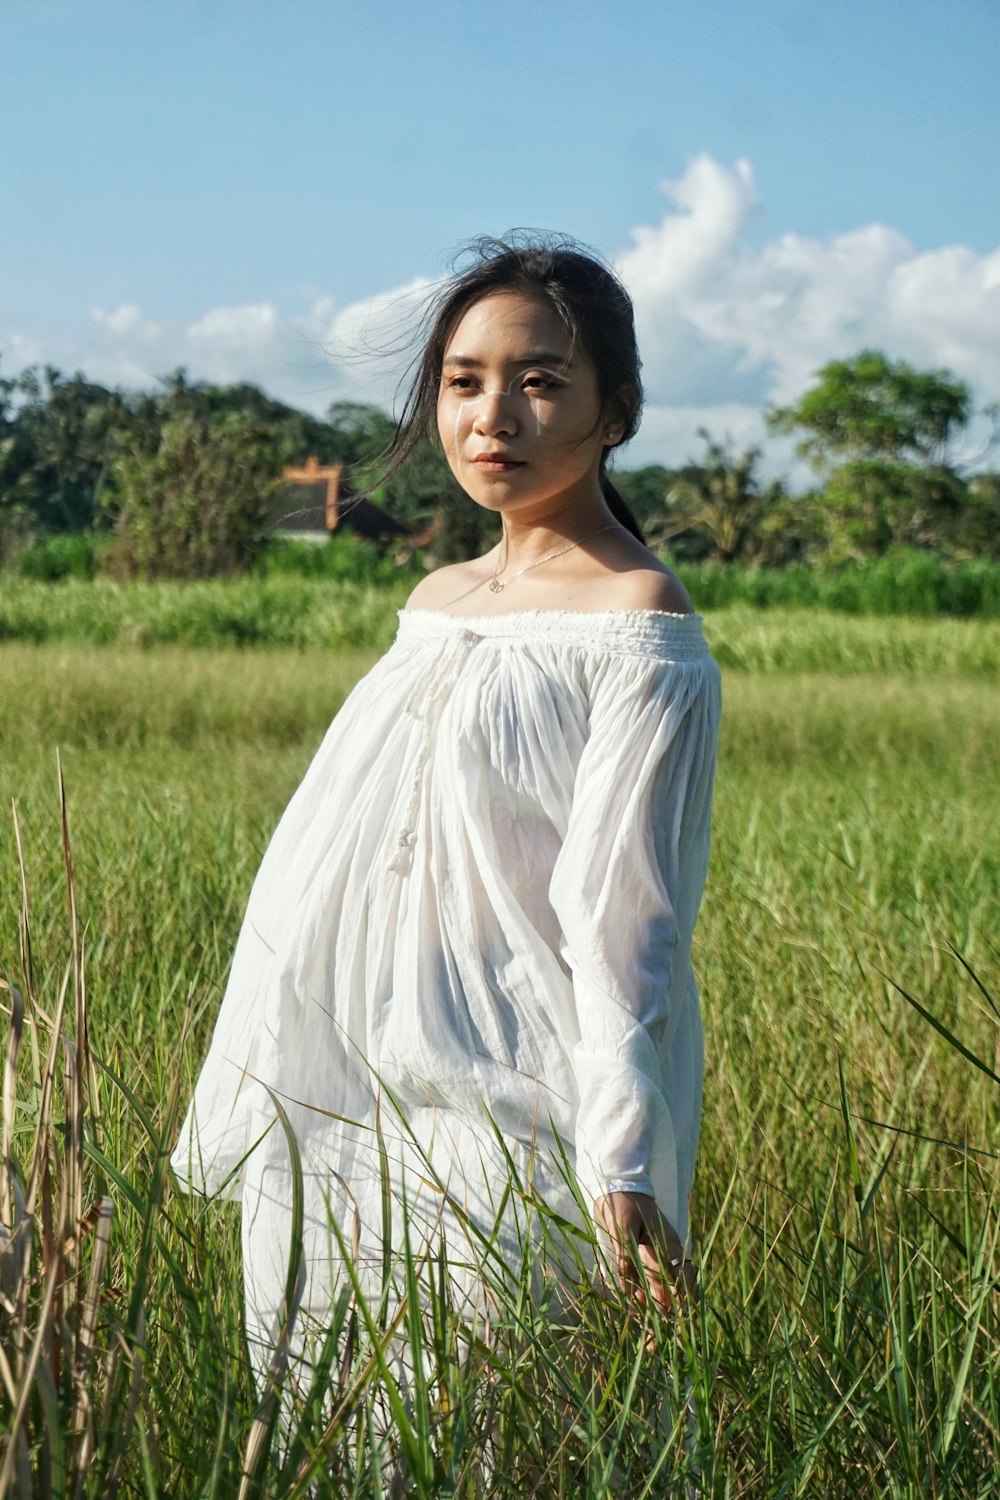 una persona in un vestito bianco in piedi in un campo di erba alta